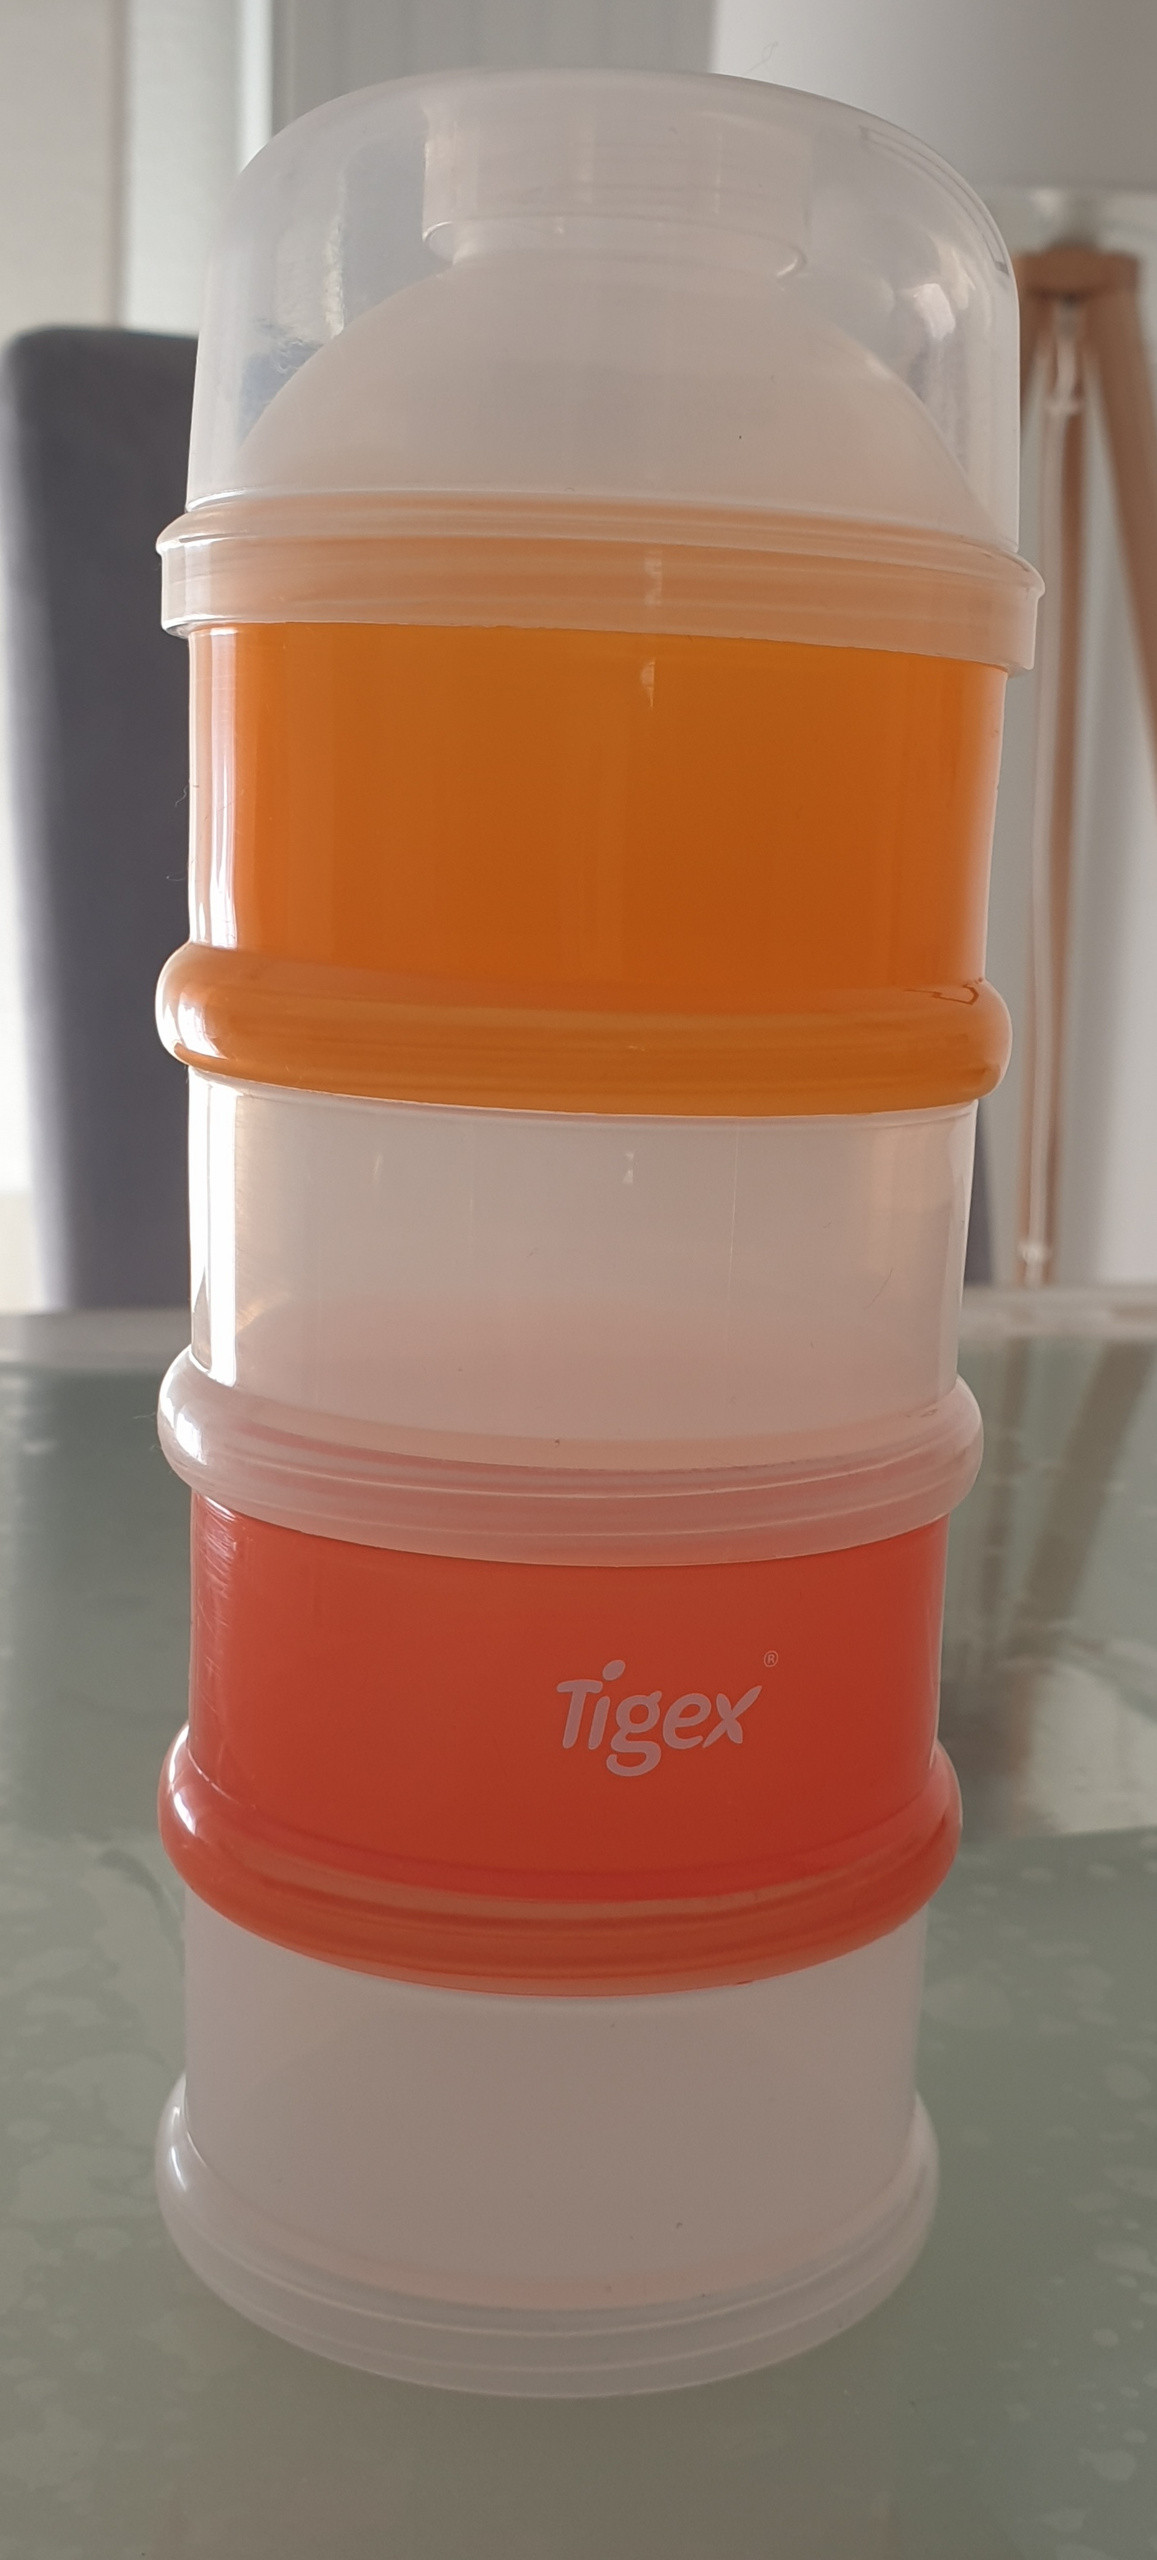 Boîte doseuse lait en poudre - Tigex